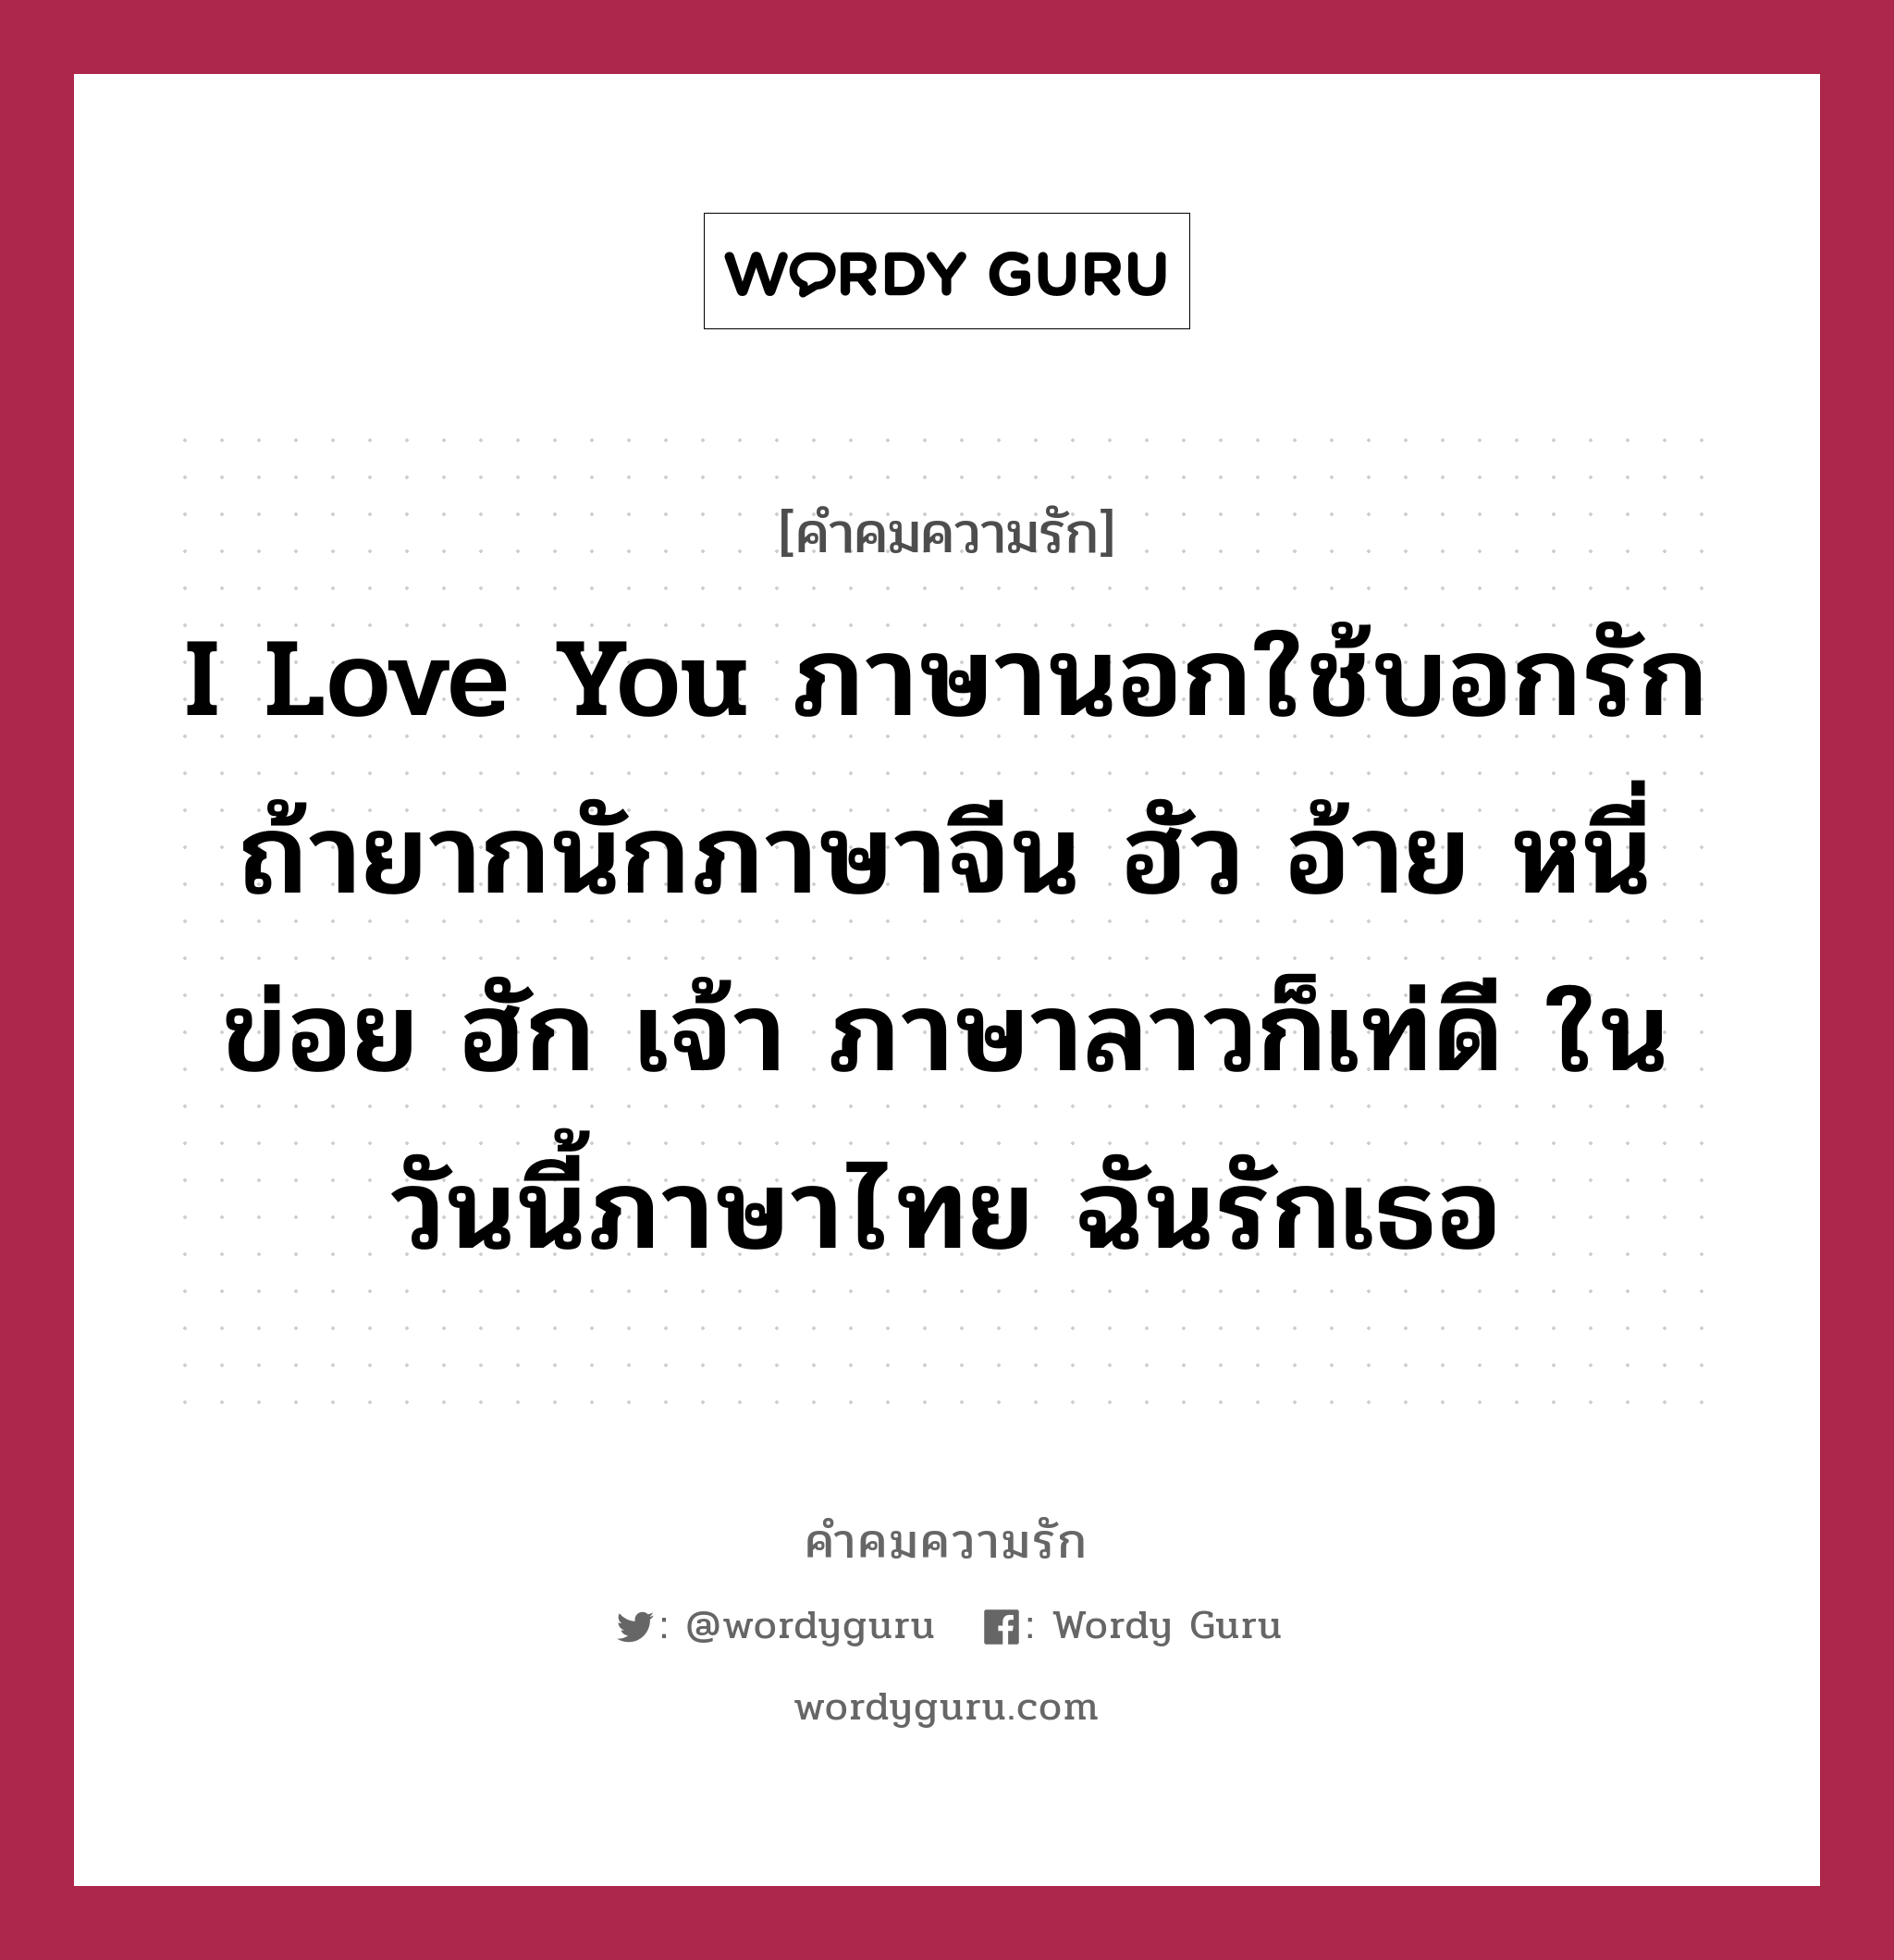 I Love You ภาษานอกใช้บอกรัก ถ้ายากนักภาษาจีน ฮัว อ้าย หนี่ ข่อย ฮัก เจ้า  ภาษาลาวก็เท่ดี ในวันนี้ภาษาไทย ฉันรักเธอ | Wordy Guru